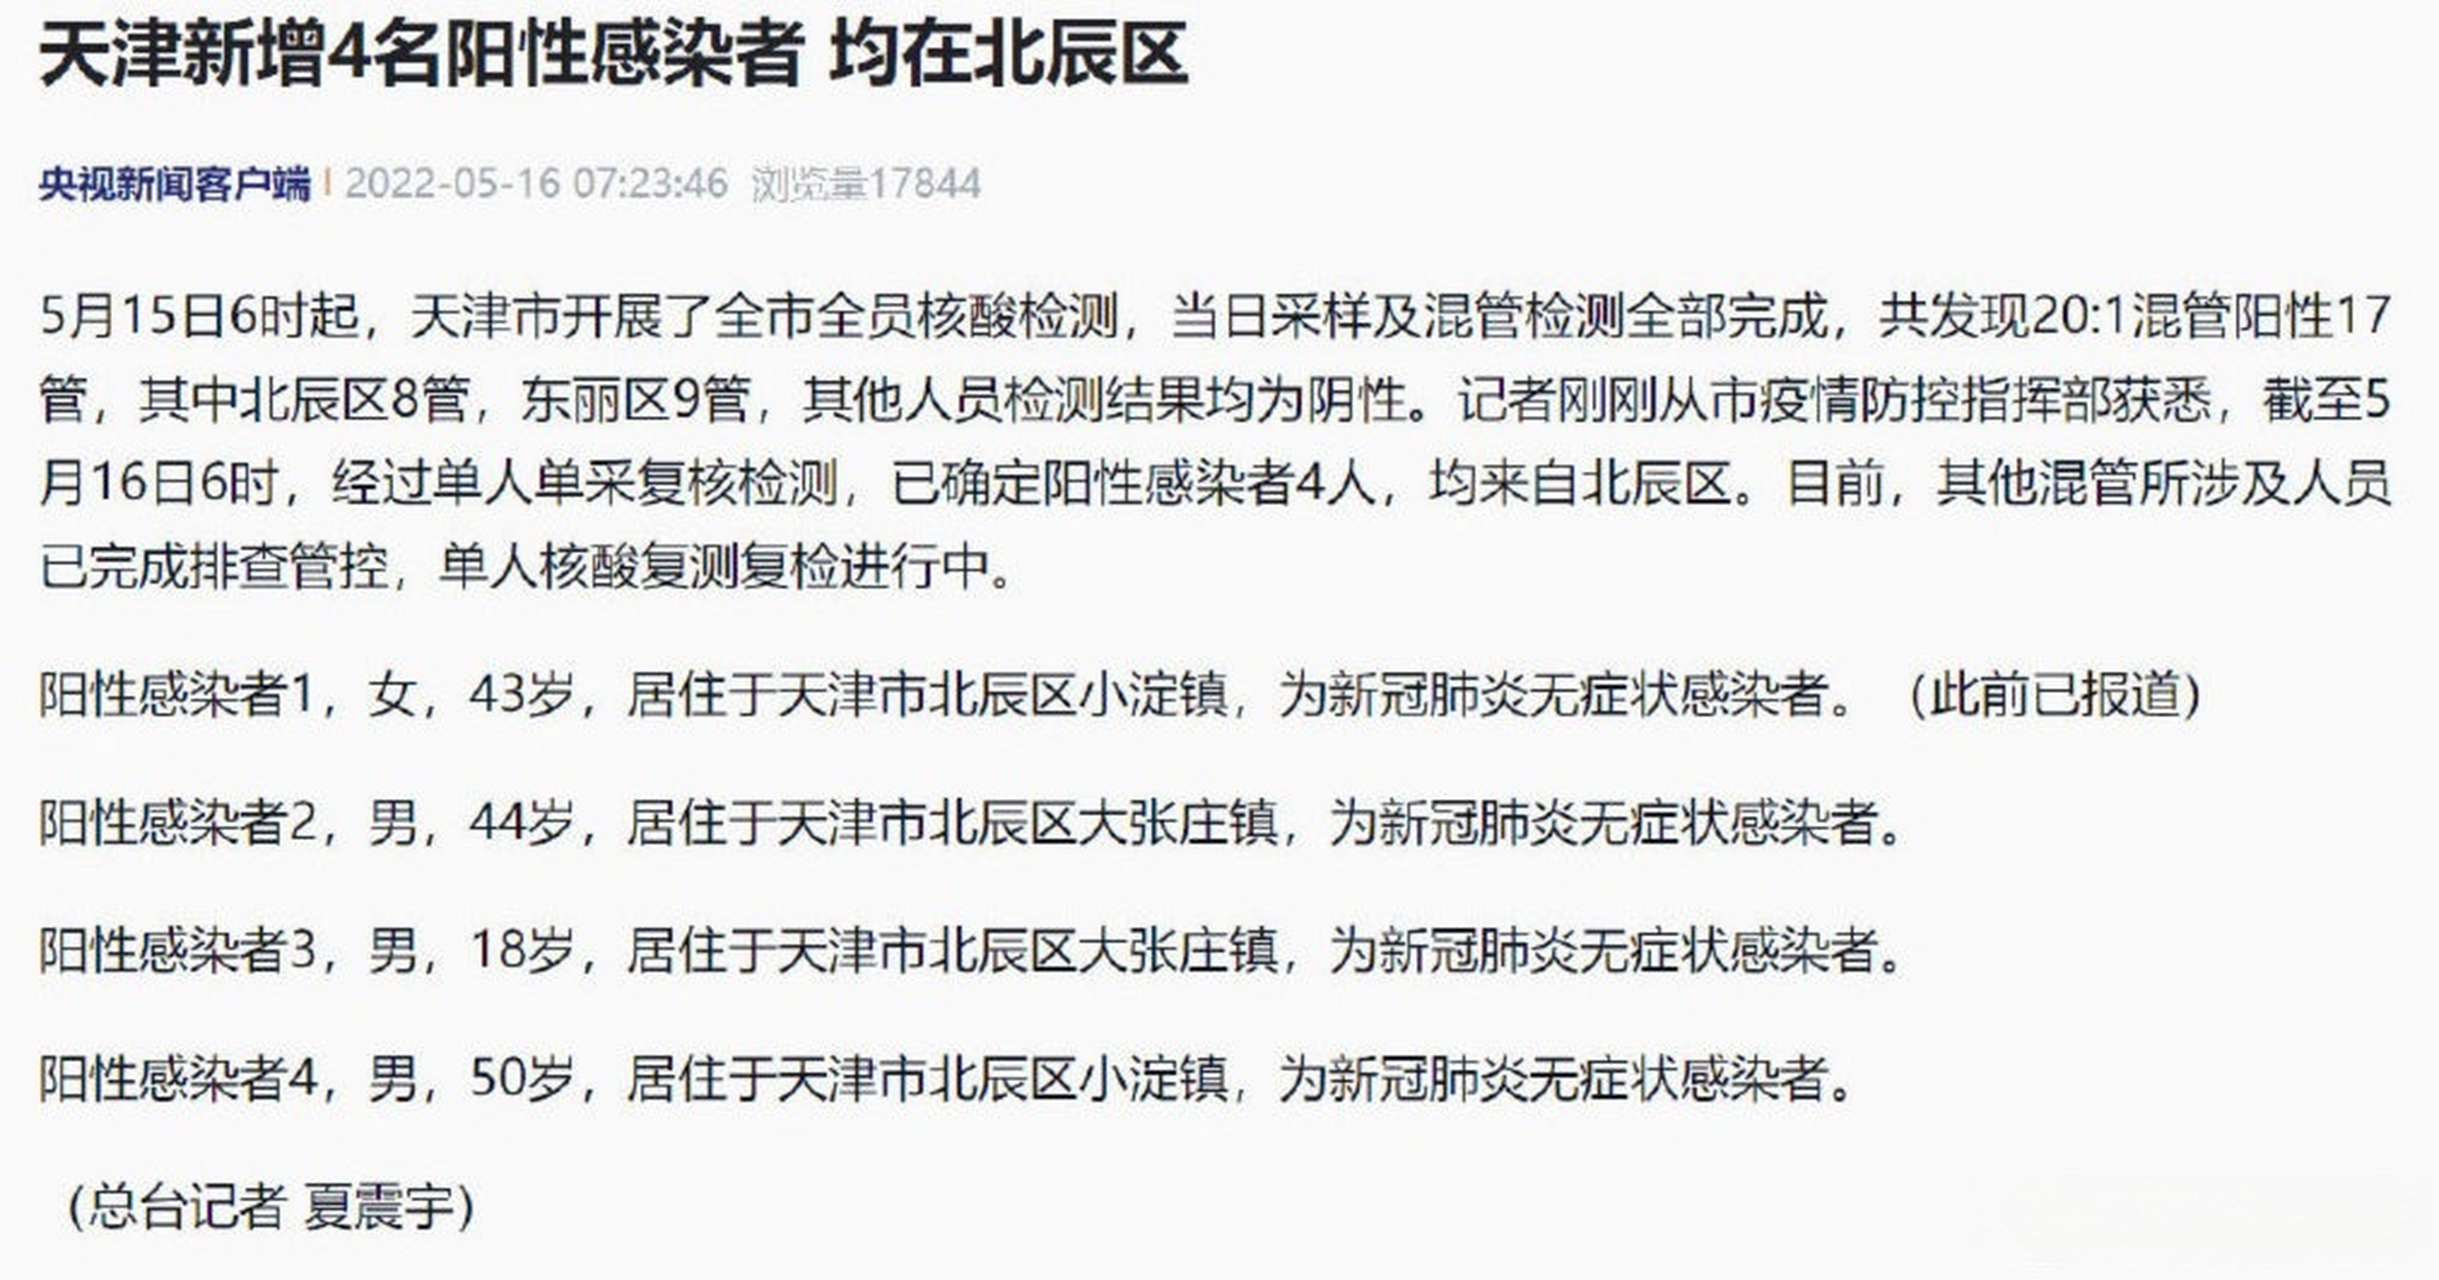 江苏无锡新增10名阳性感染者(艾滋病病人和艾滋病病毒感染者阳性)